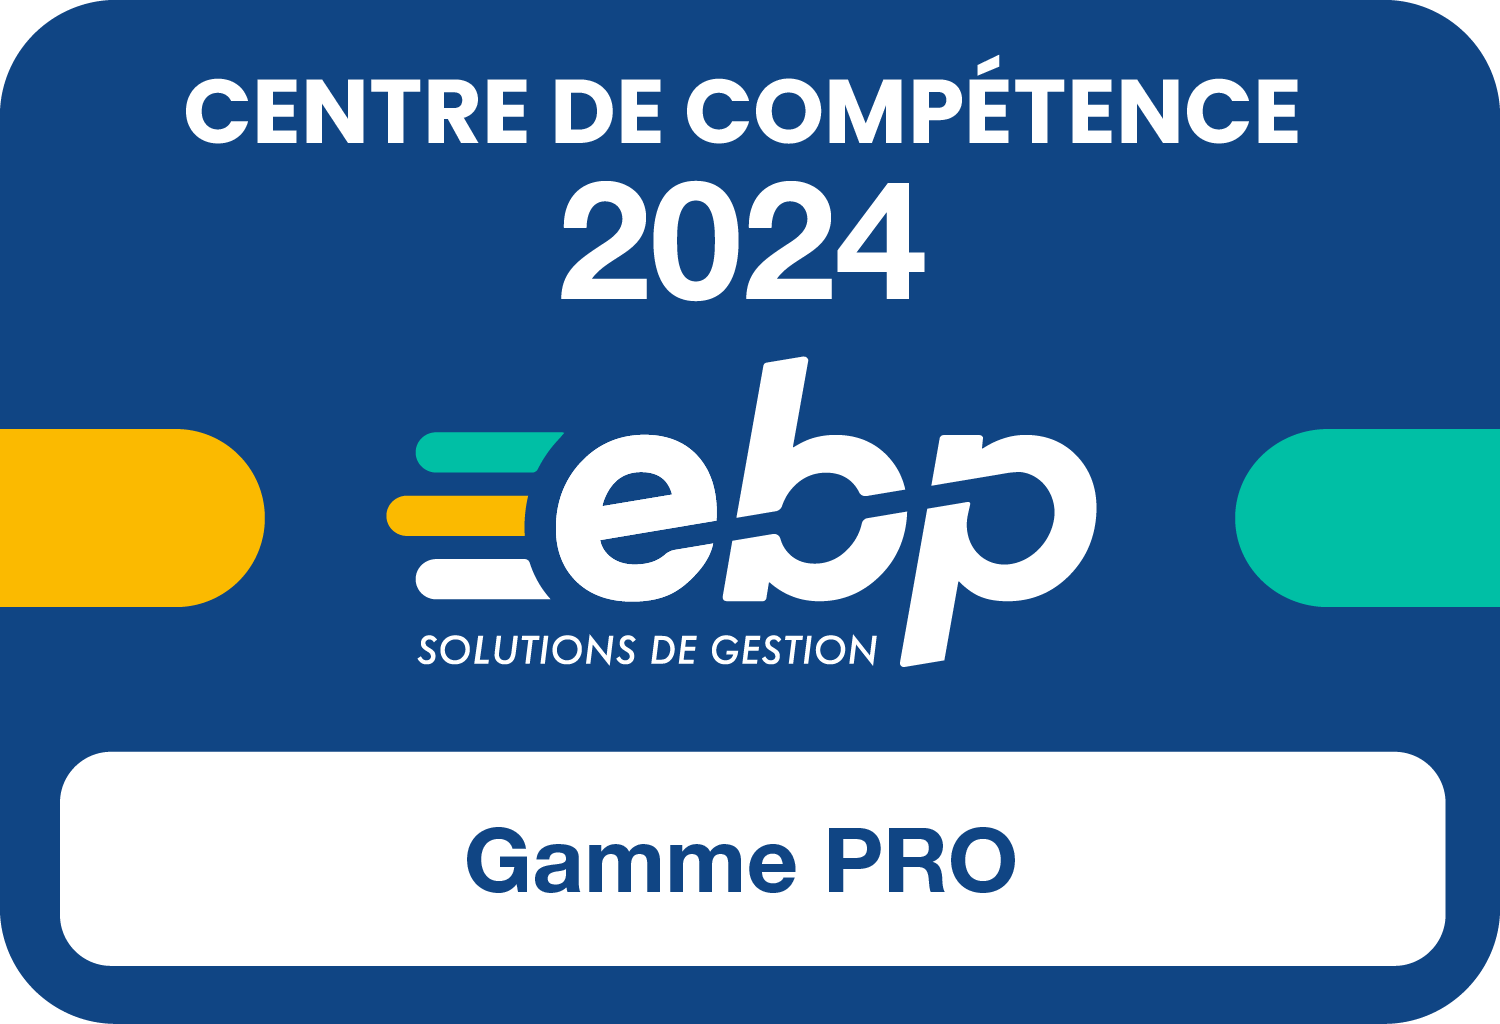 Vignette-Centre-de-Competence-Gamme-Pro-2024-1500px-RVB